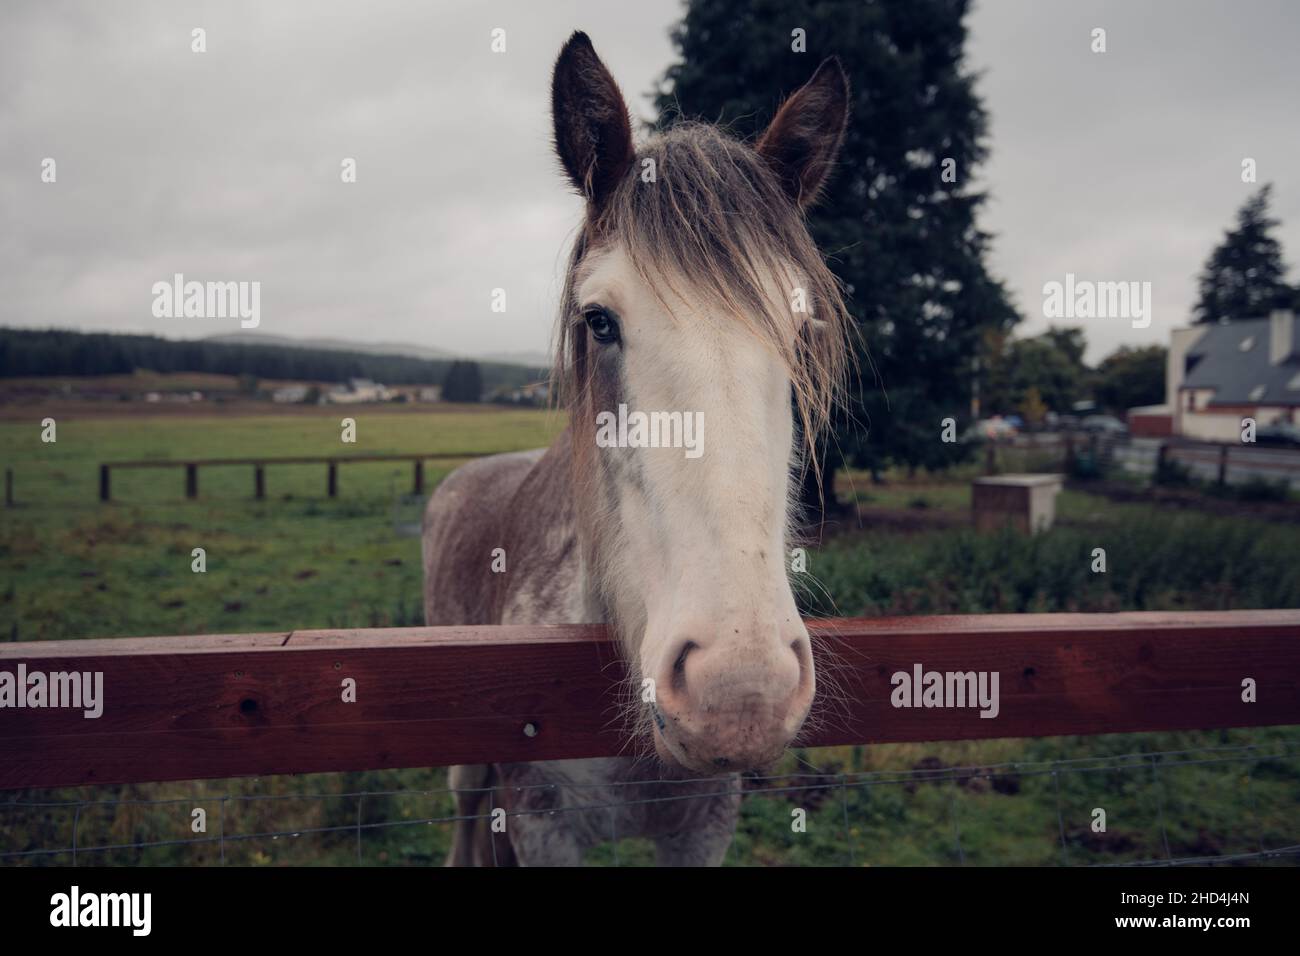 Un caballo blanco mira la cámara desde detrás de una valla en Escocia Foto de stock